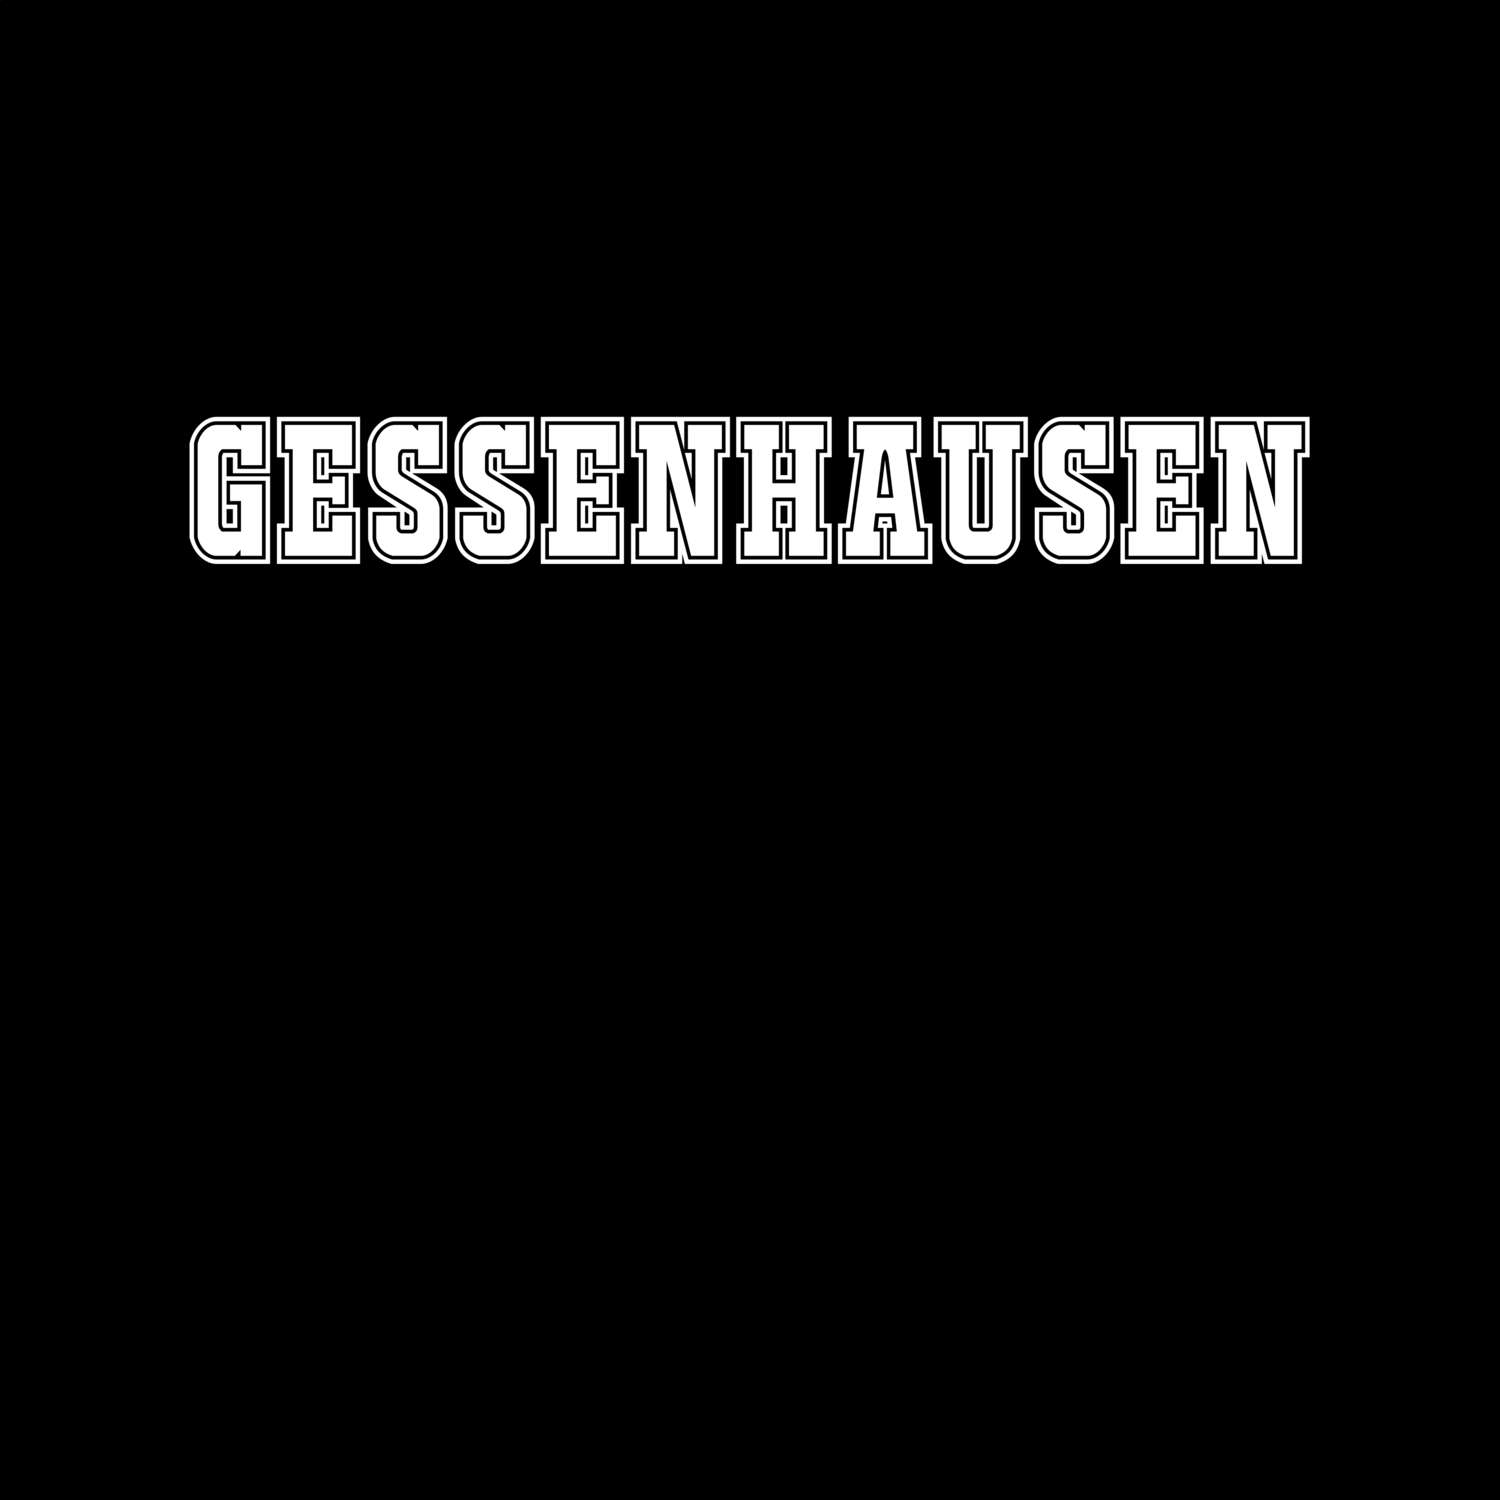 Gessenhausen T-Shirt »Classic«